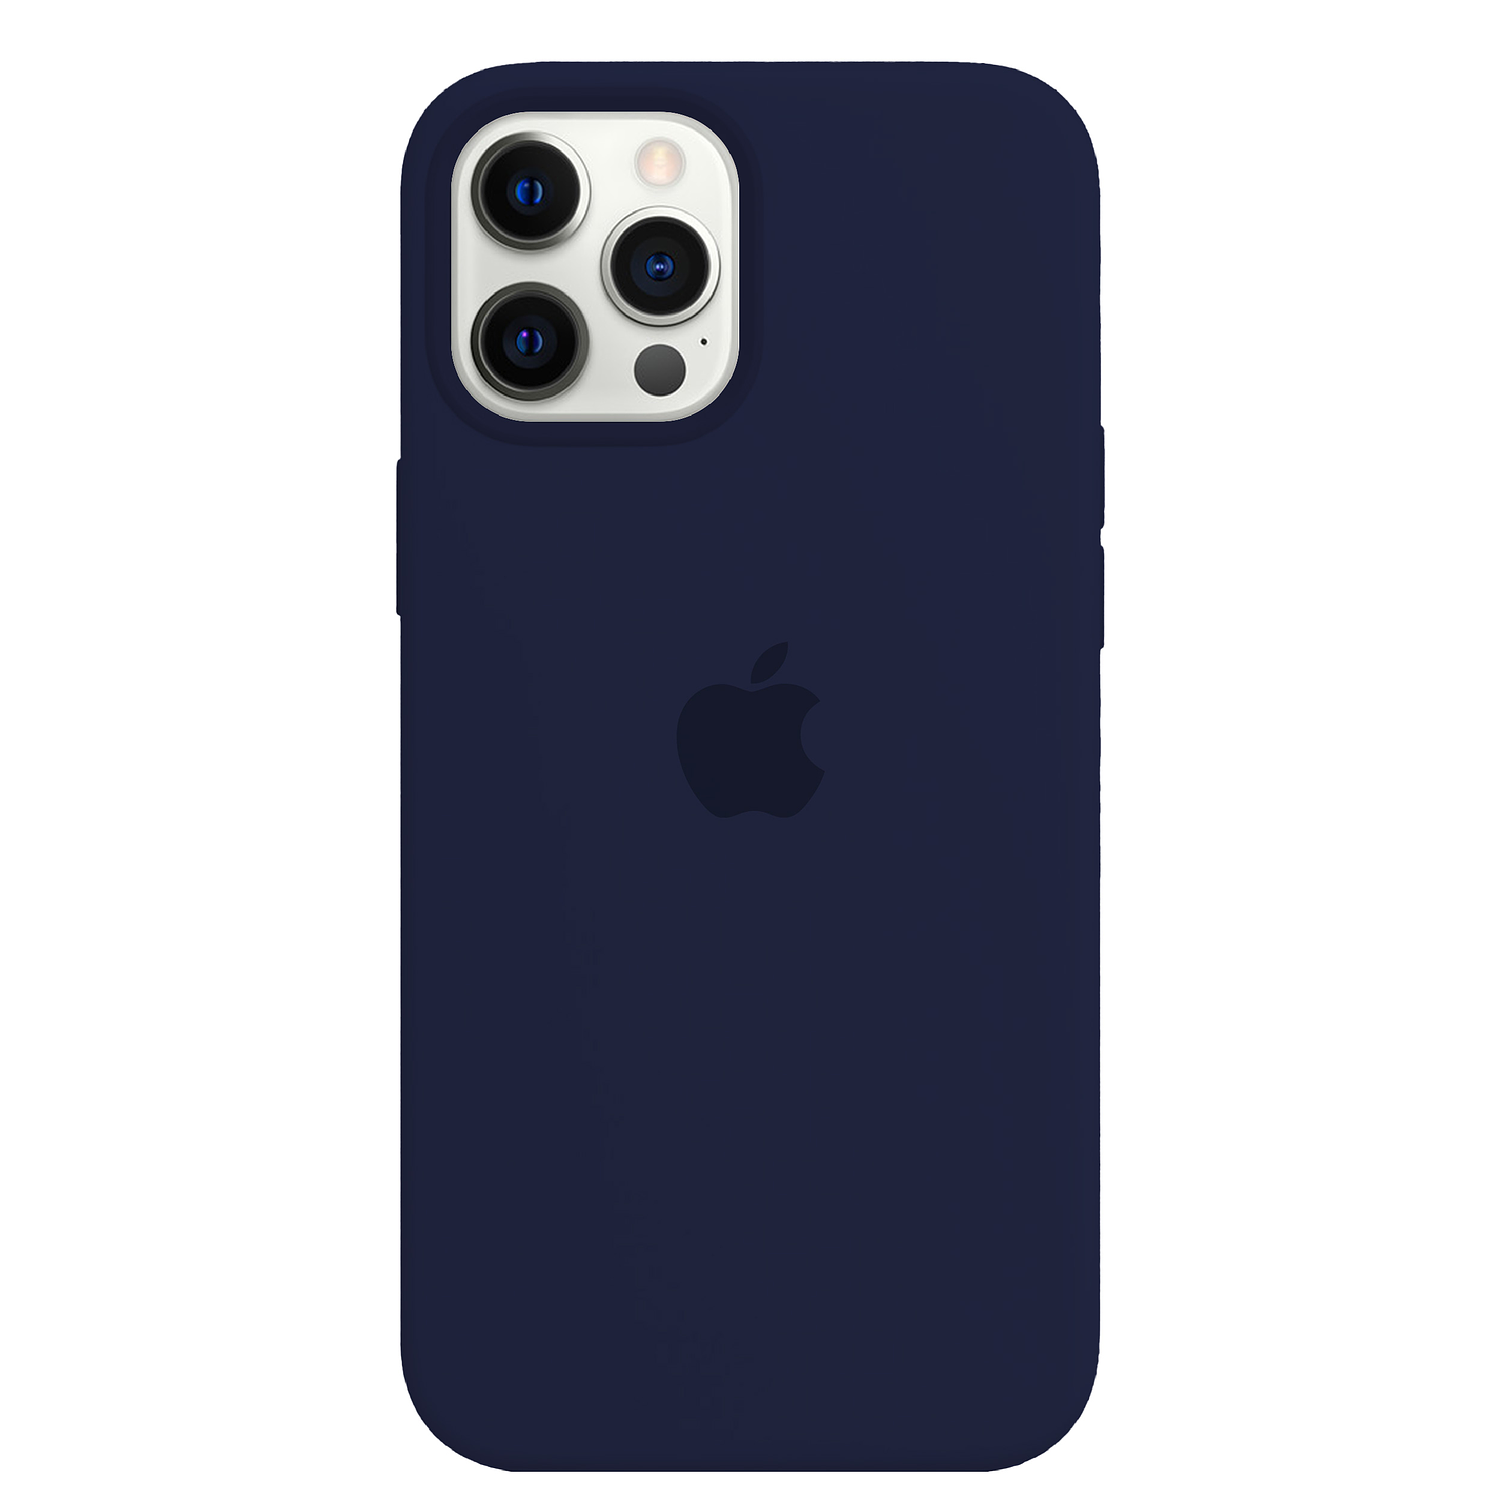 Carcasa de Silicona - iPhone 12 Pro Max (Colores)